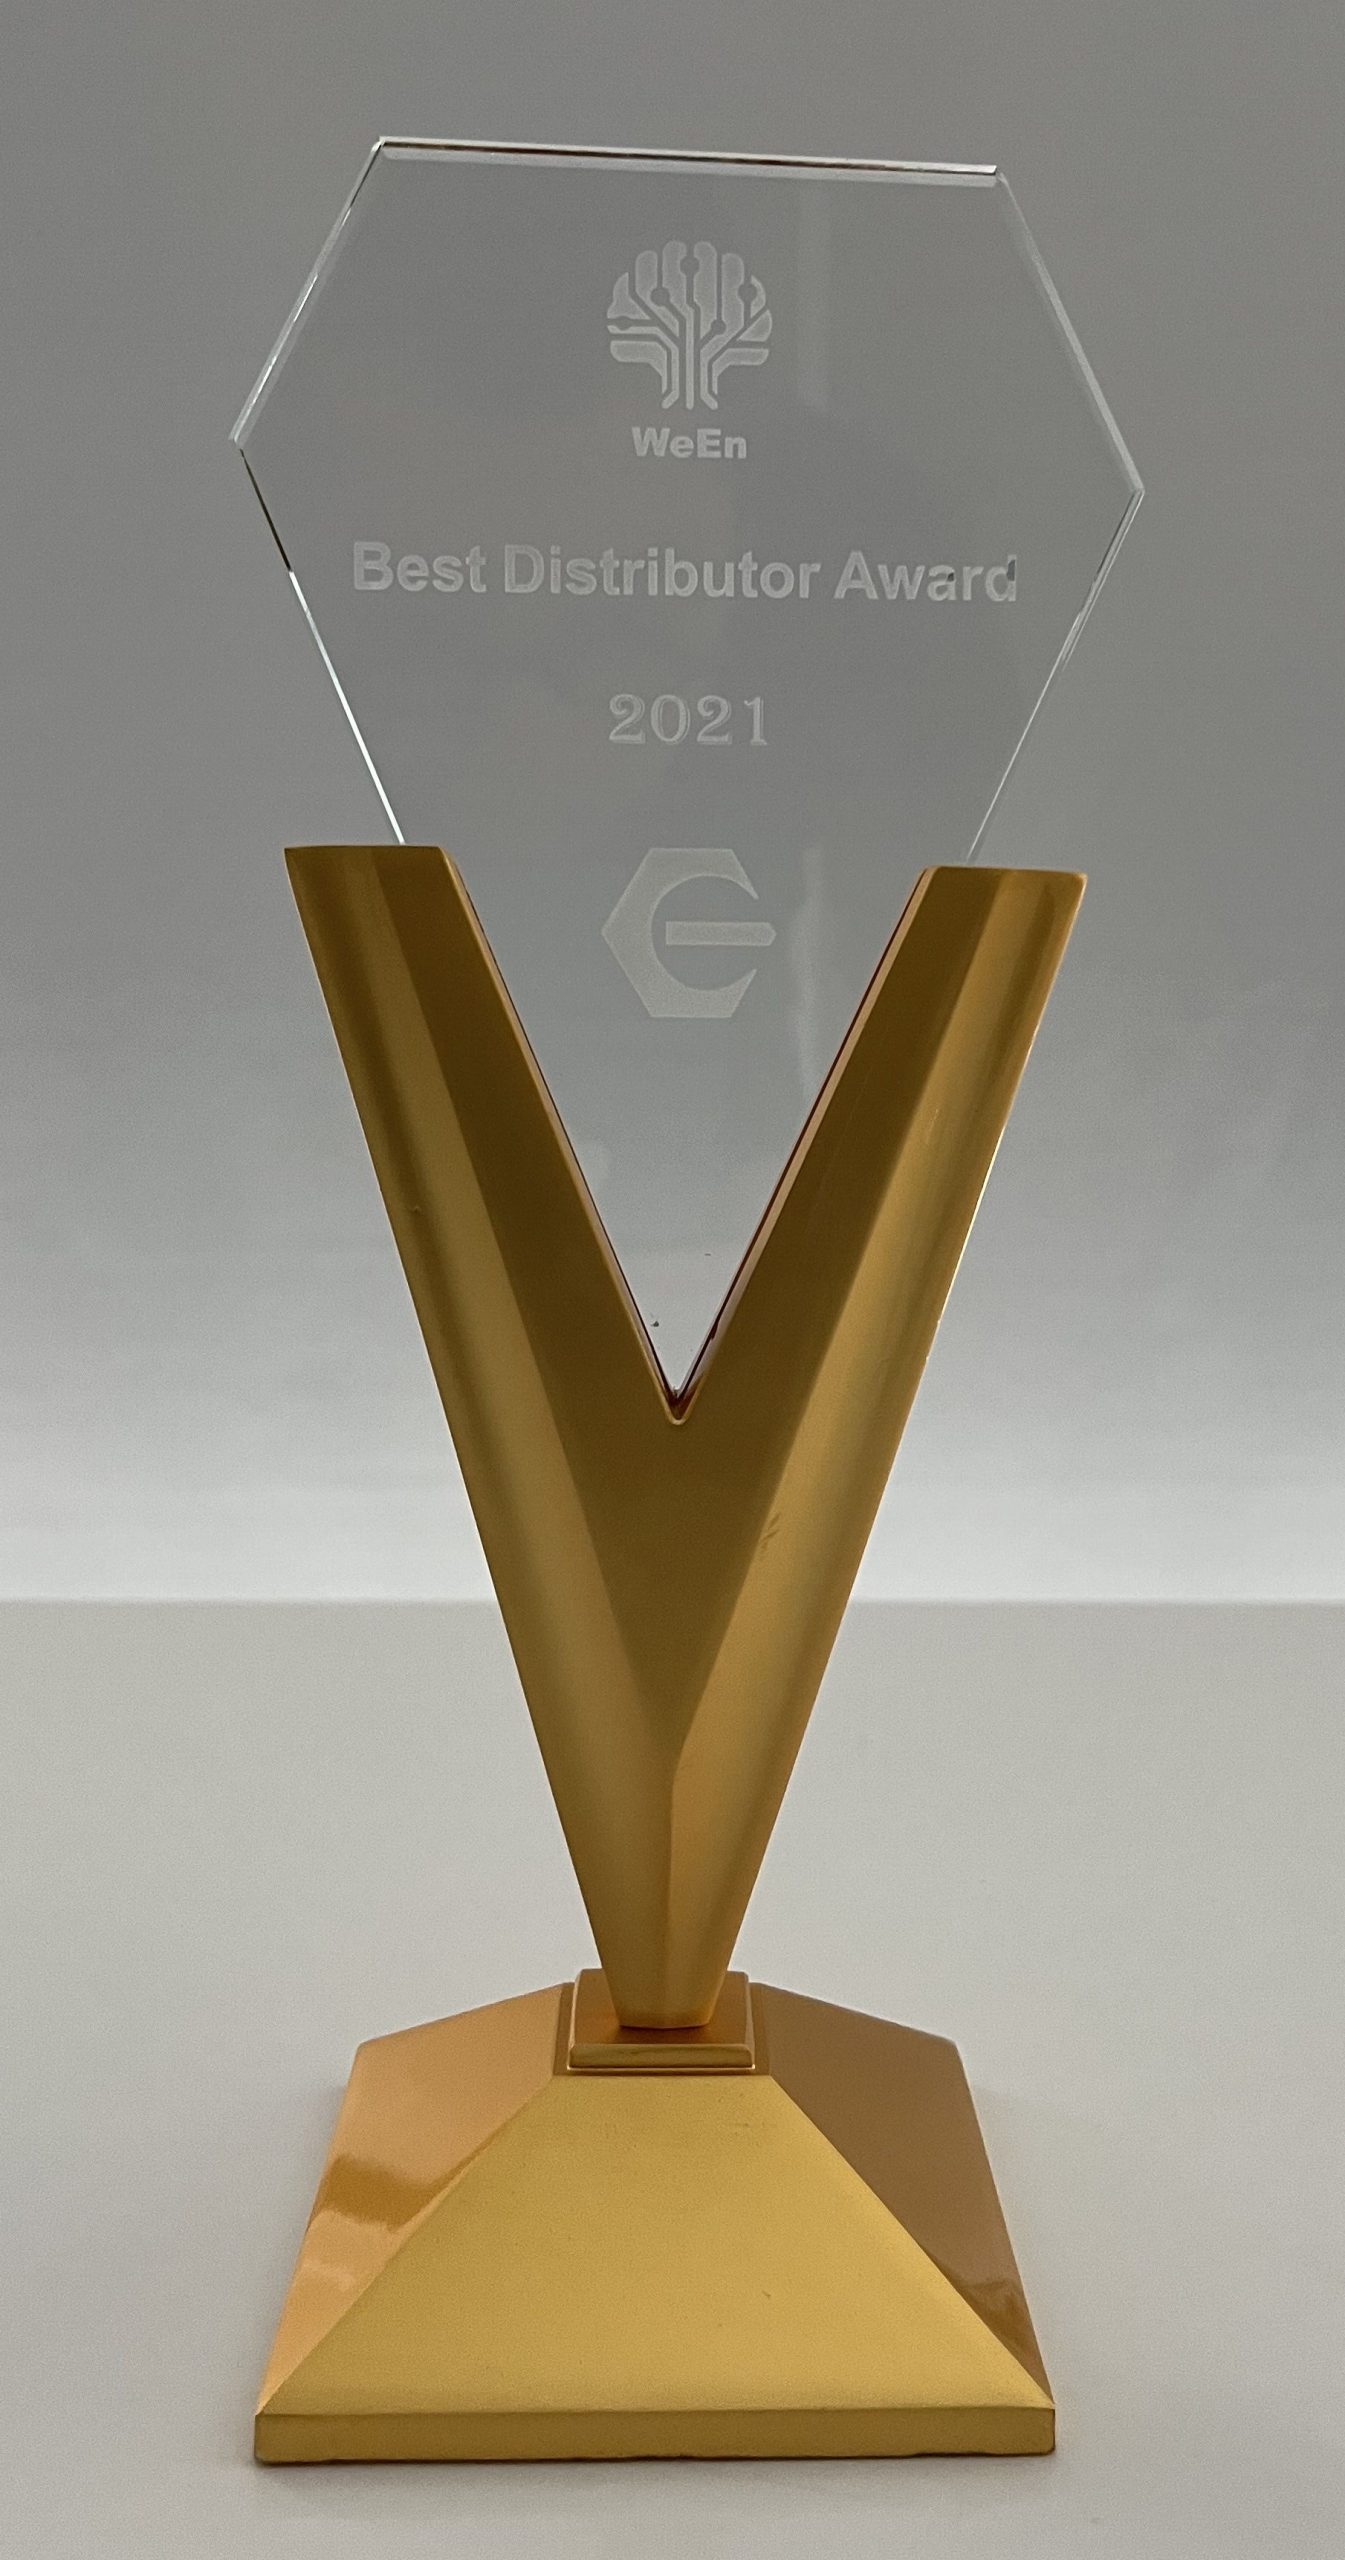 WeEn Y2021 Best Distributor Award Edal_M